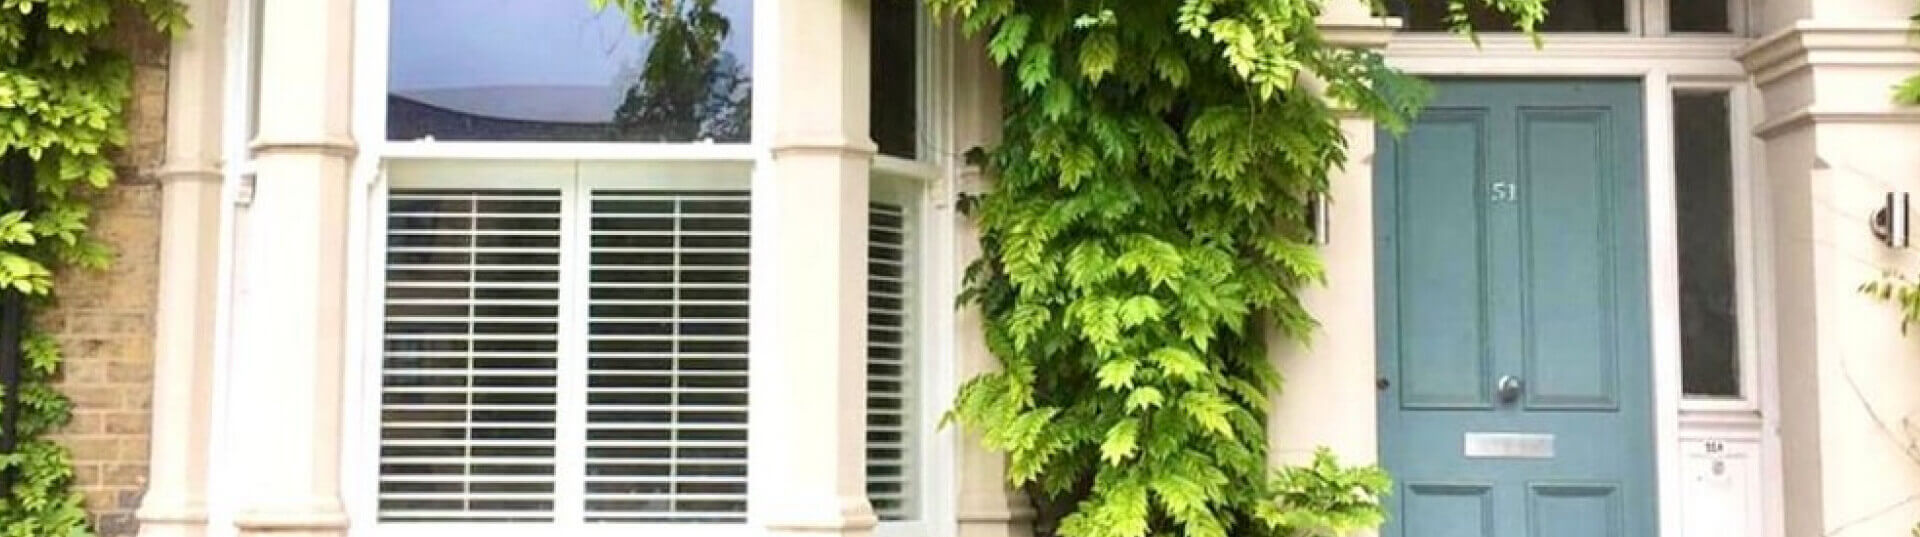 sash-window-shutters